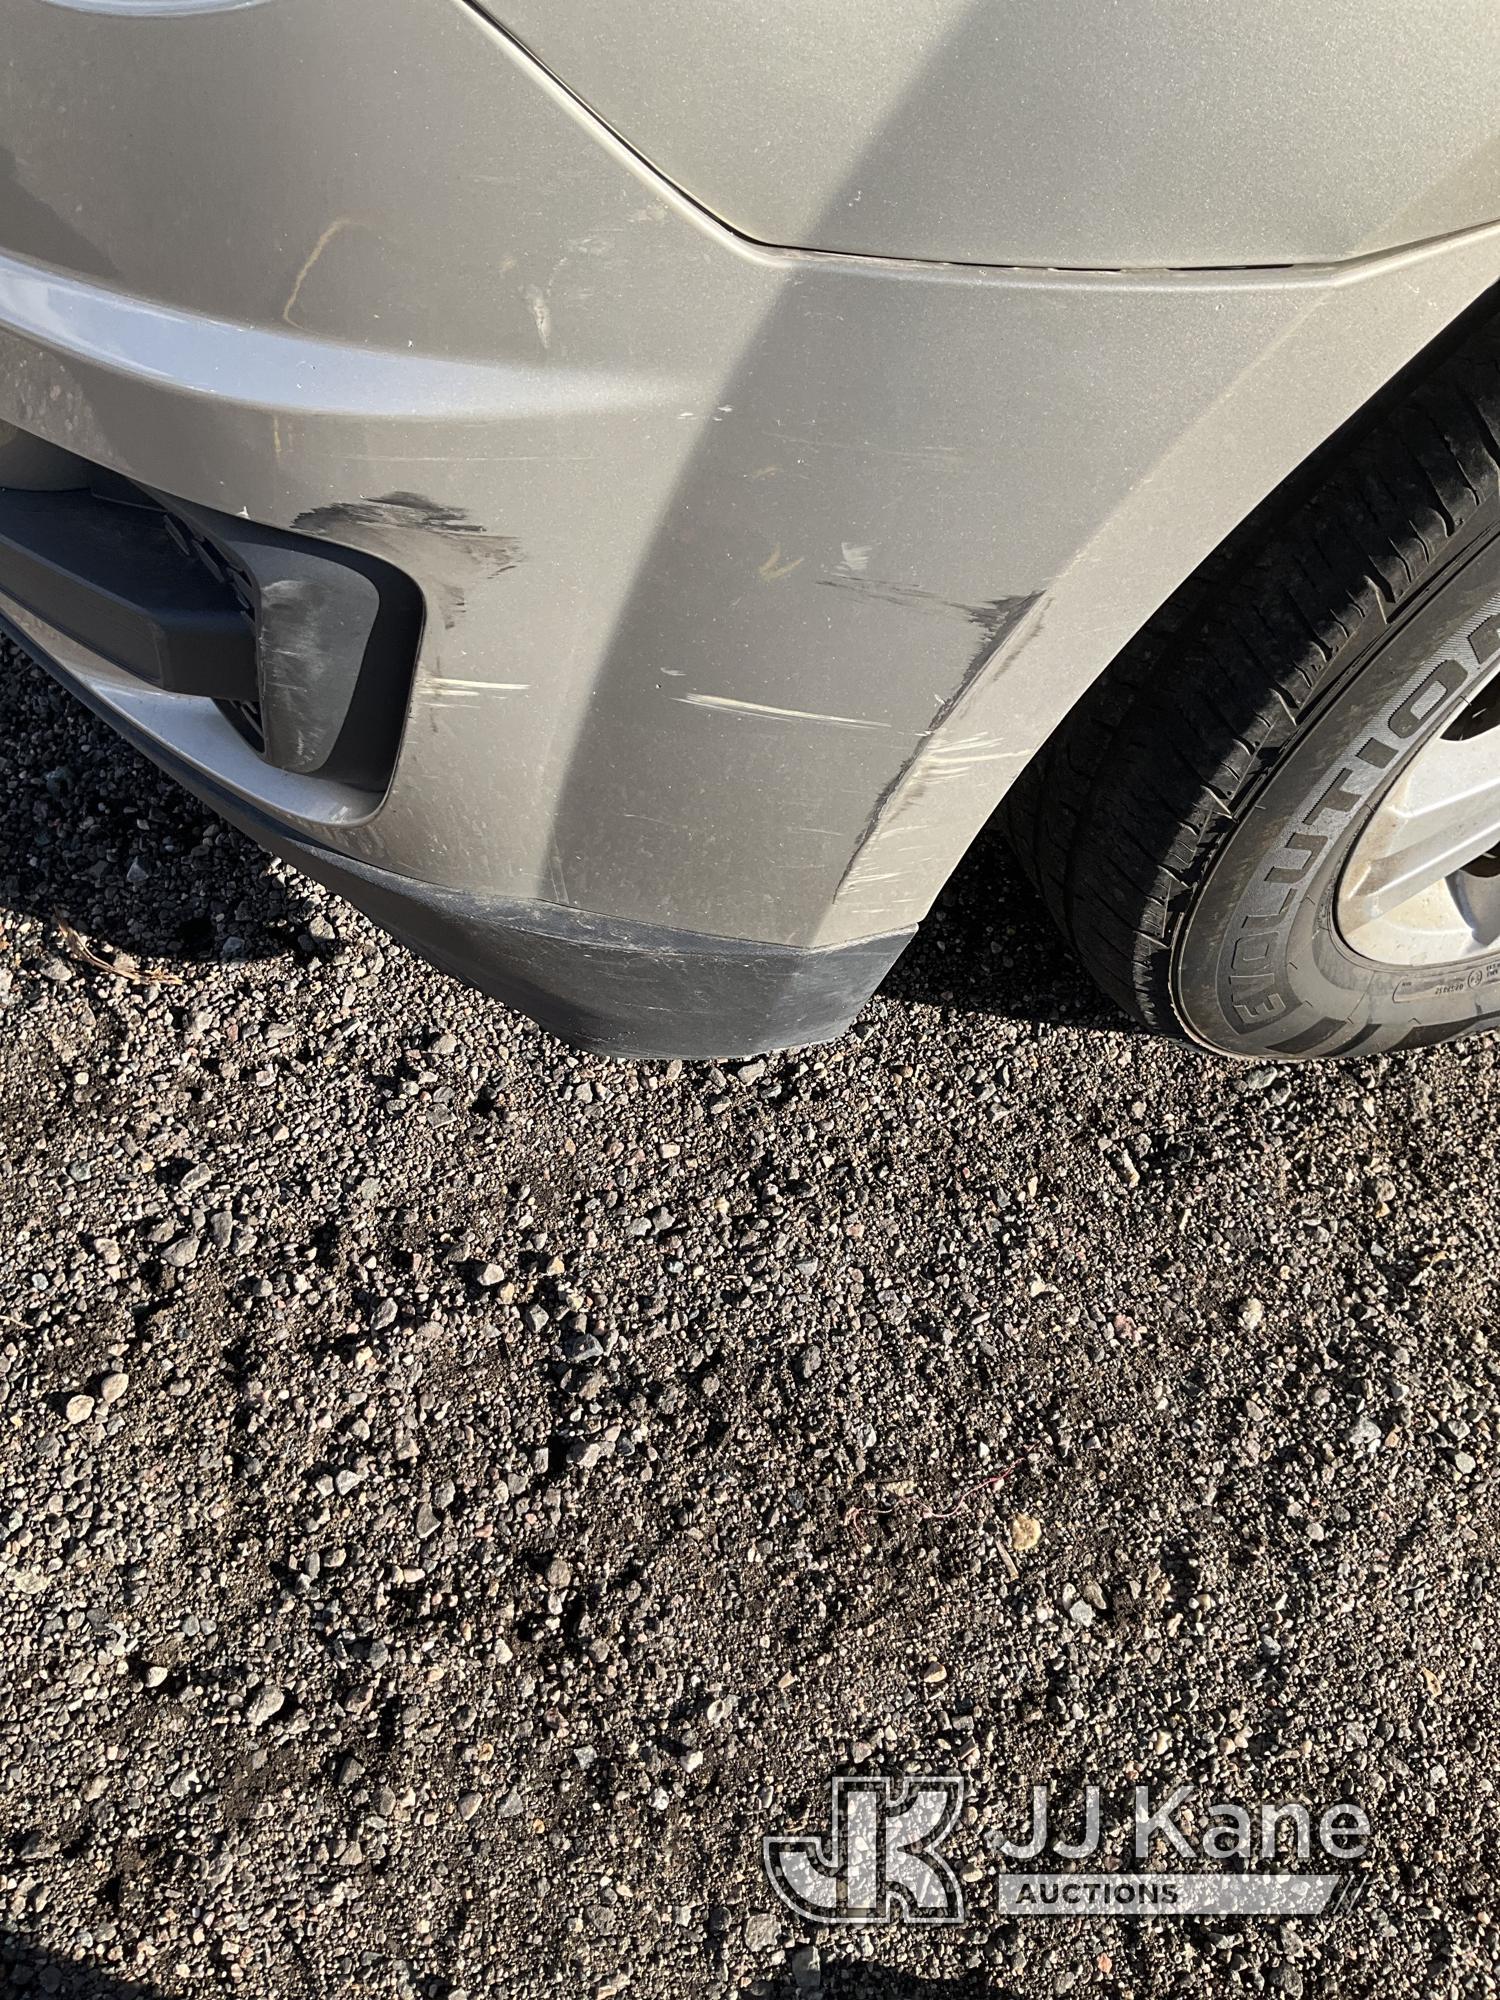 (Keenesburg, CO) 2015 Chevrolet Equinox 4-Door Sport Utility Vehicle Runs & Moves) (Broken Back Wind